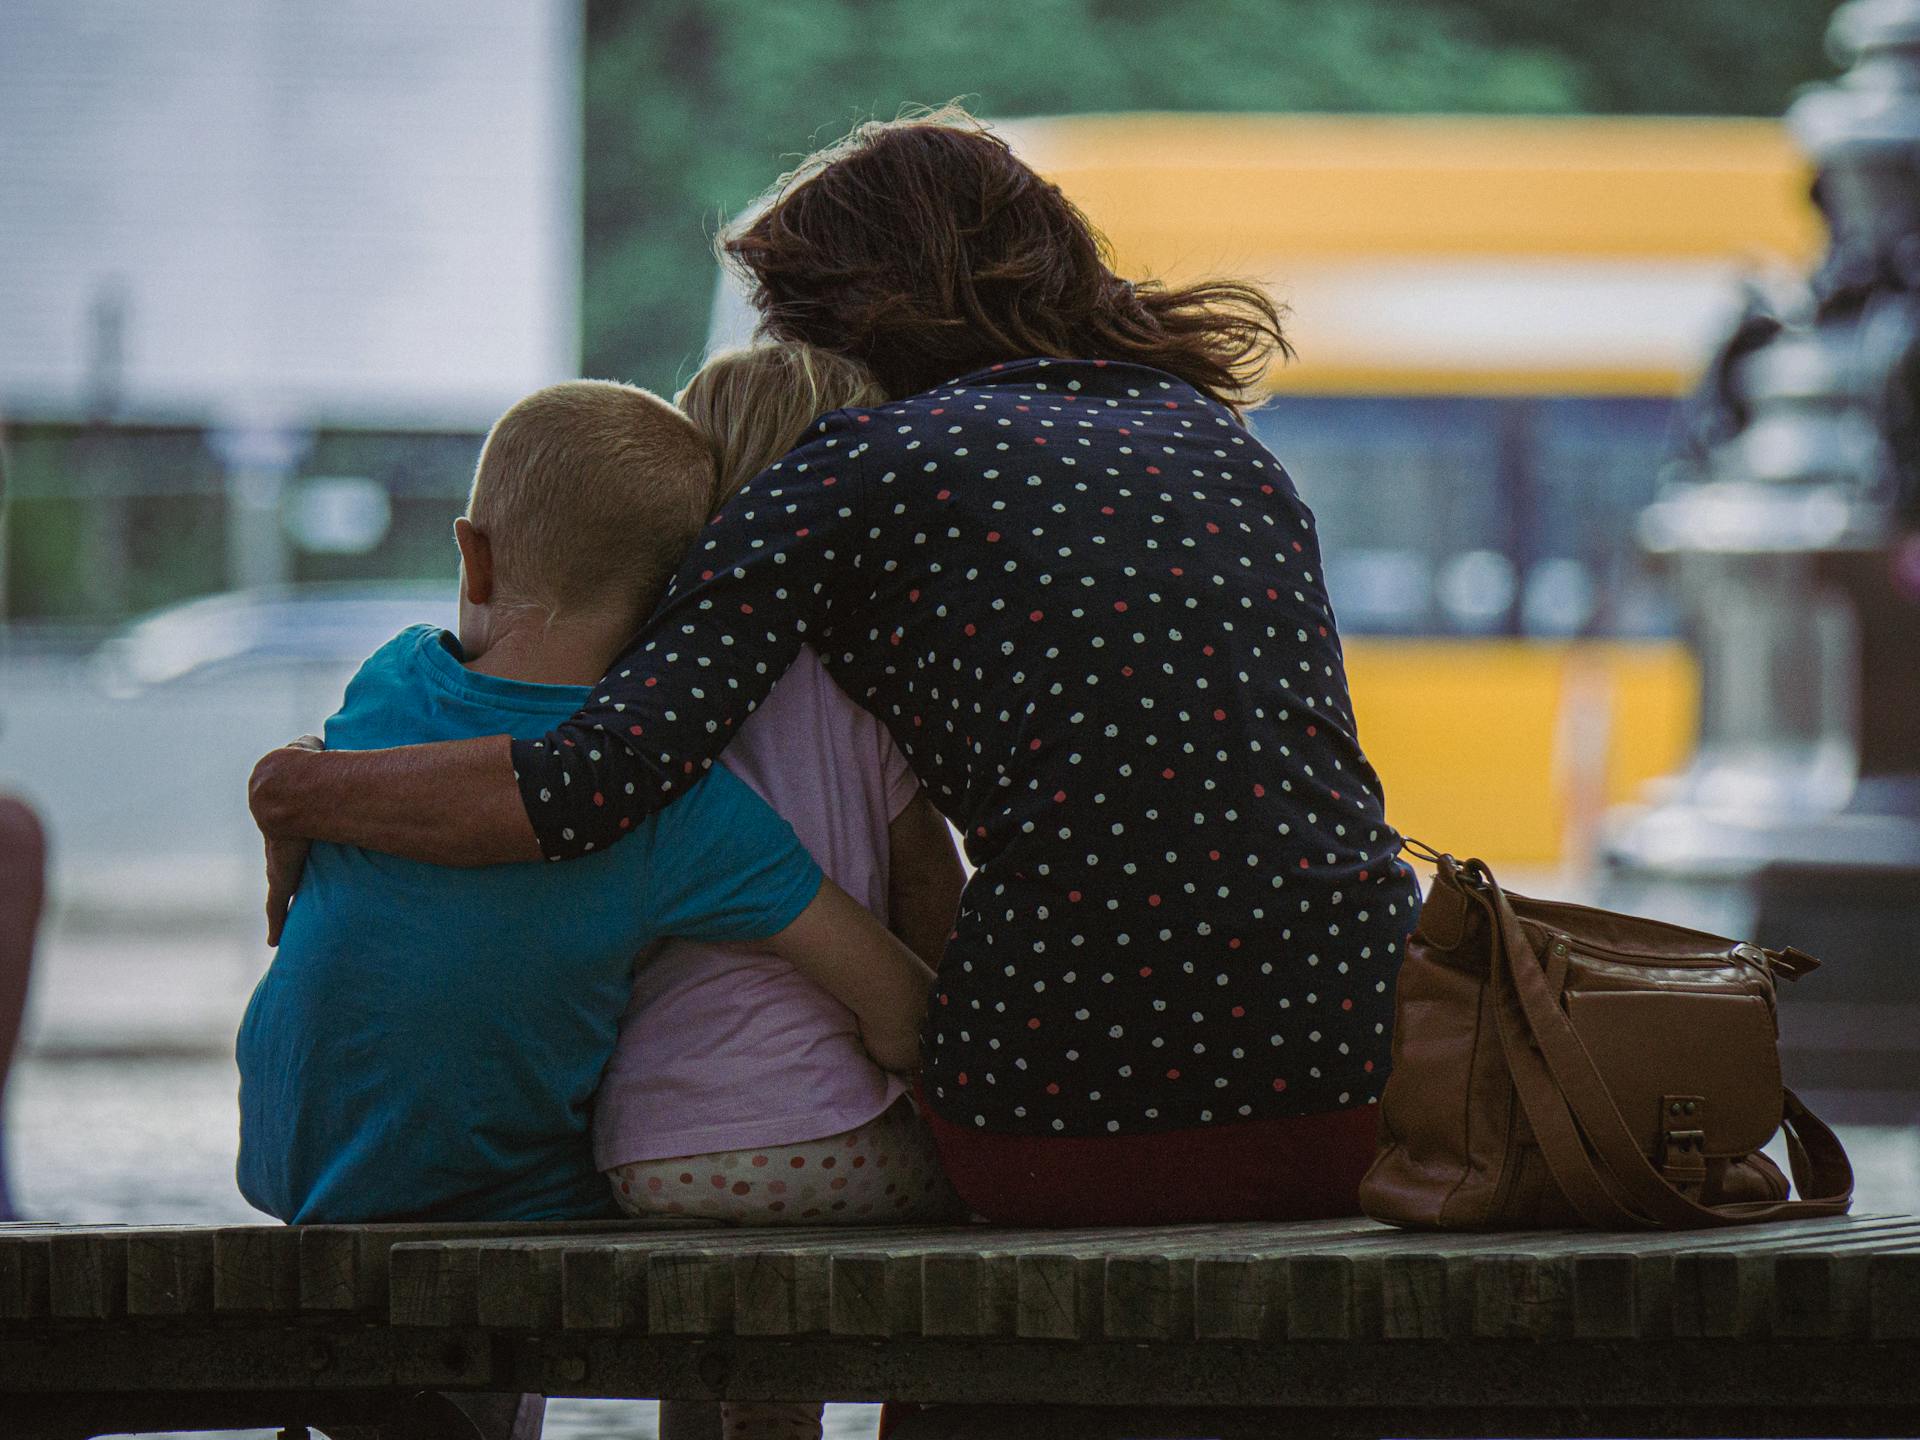 Vue de dos d'une femme serrant ses enfants dans ses bras alors qu'elle est assise sur un banc | Source : Pexels